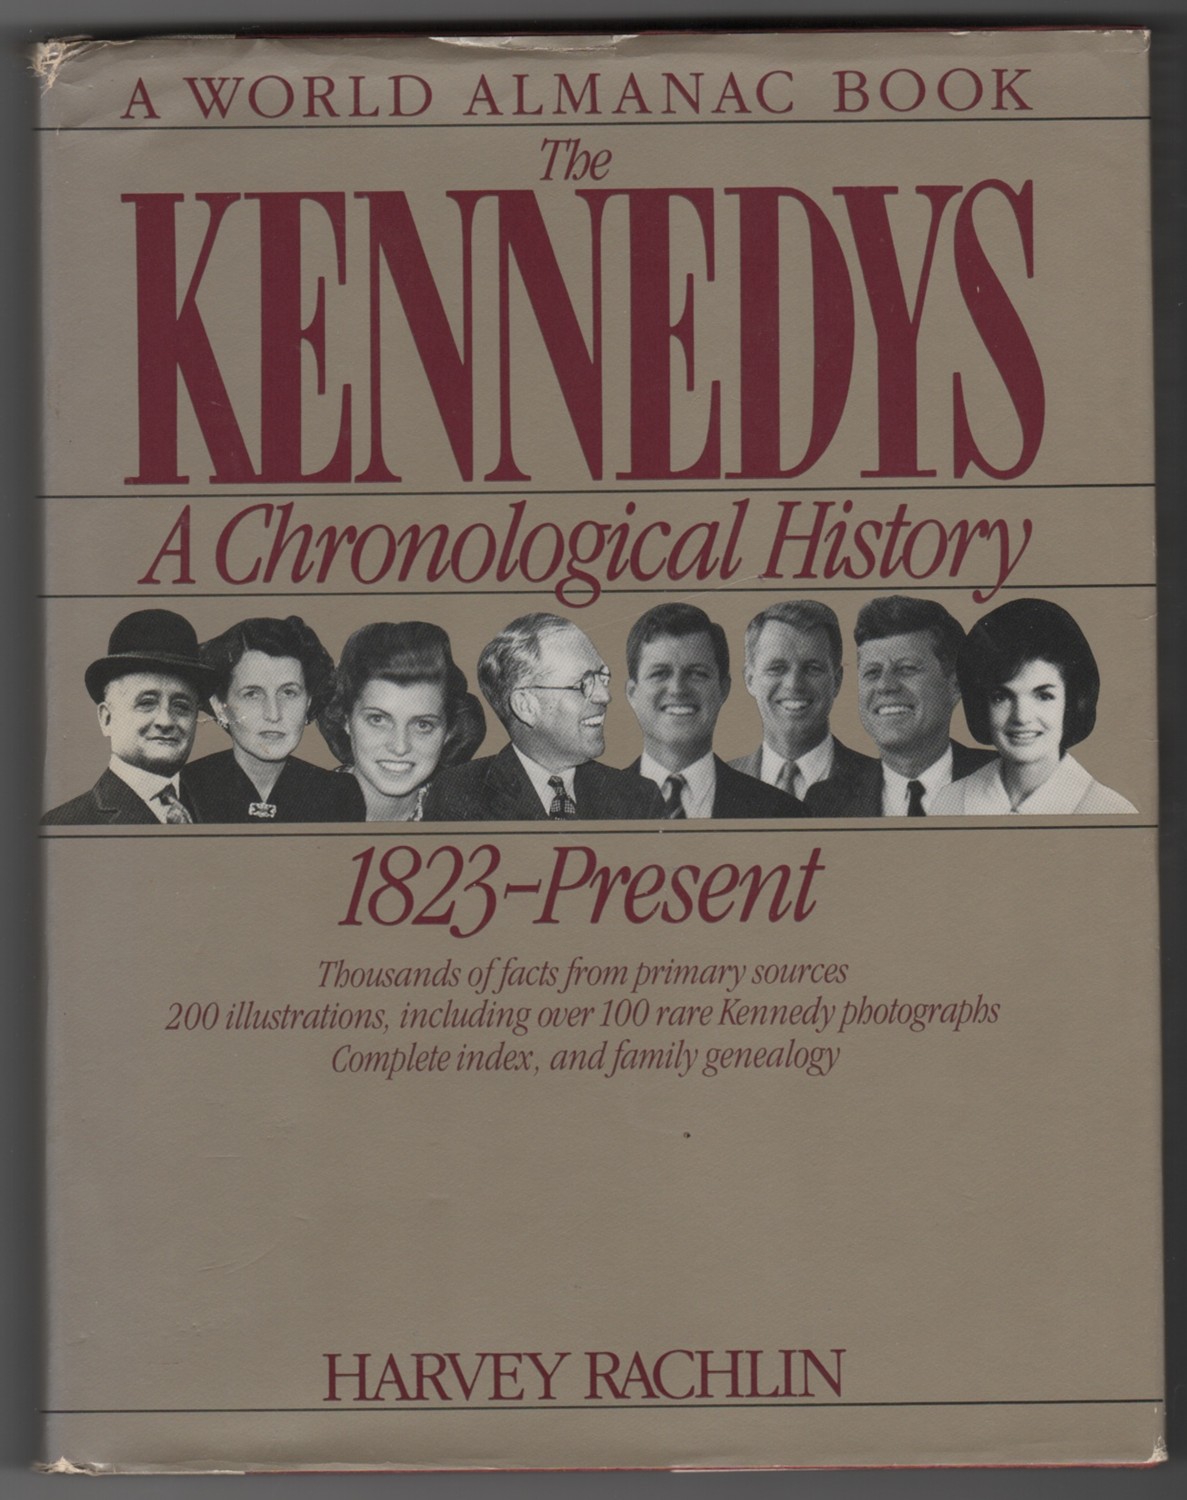 RACHLIN, HARVEY - The Kennedys a Chronological History, 1823